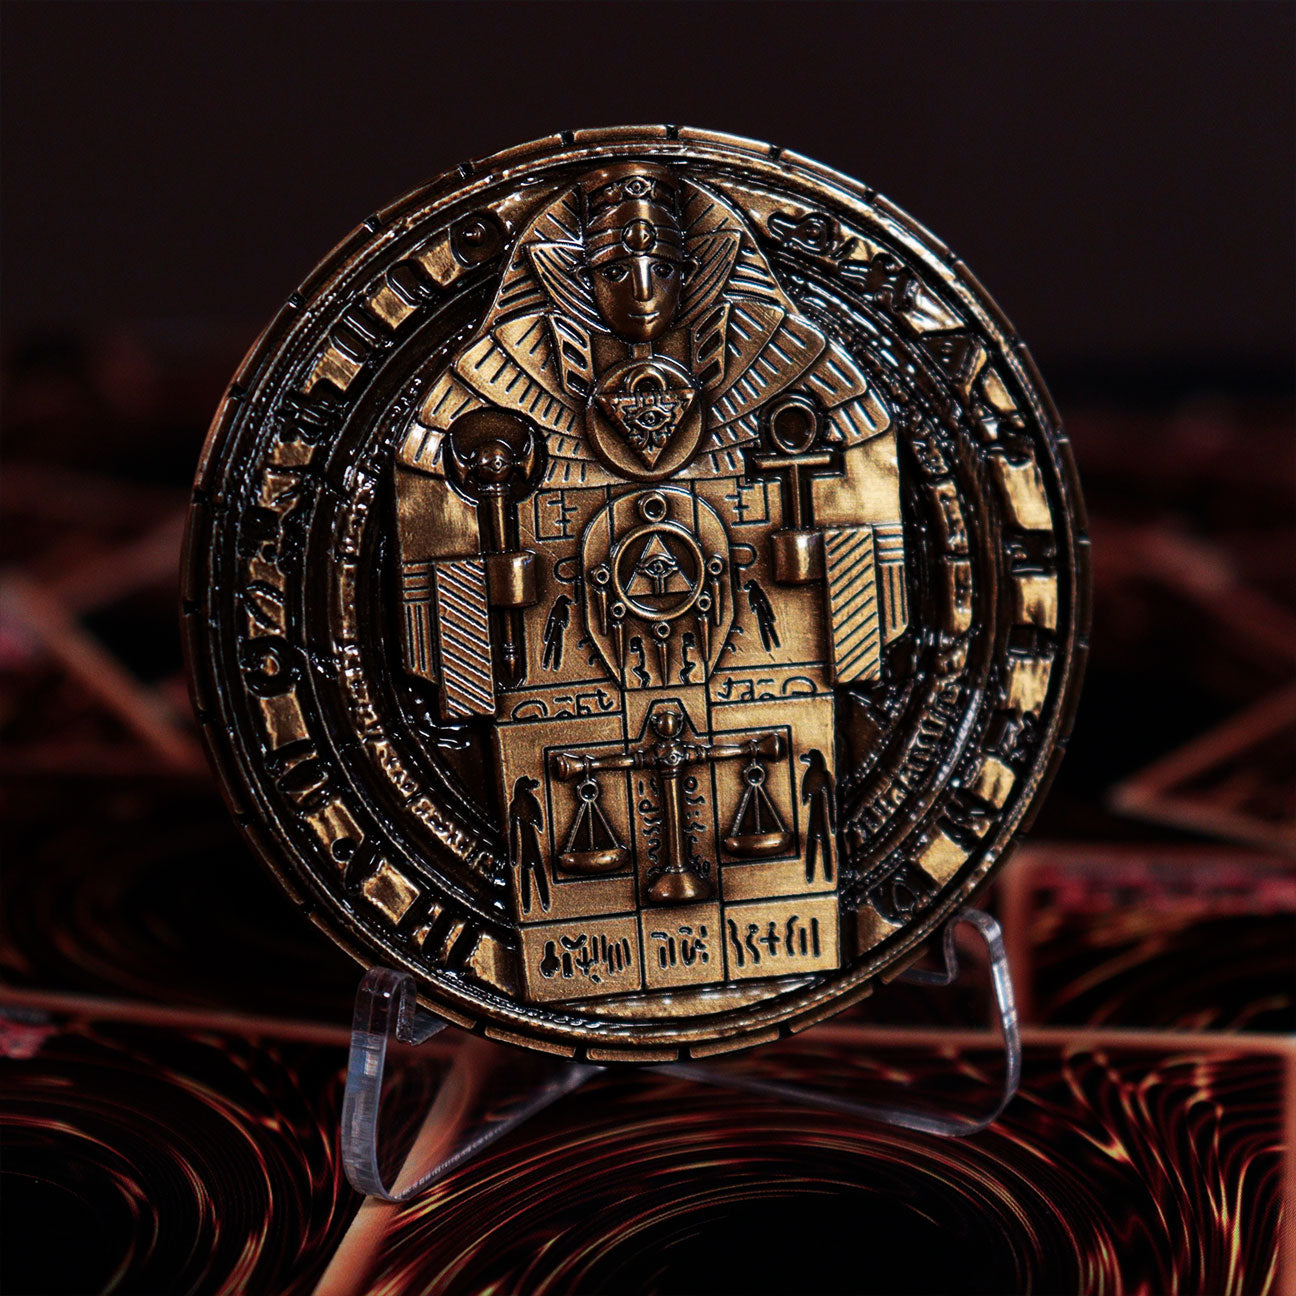 Yu-Gi-Oh! Limited Edition Replica Millennium Stone Medallion